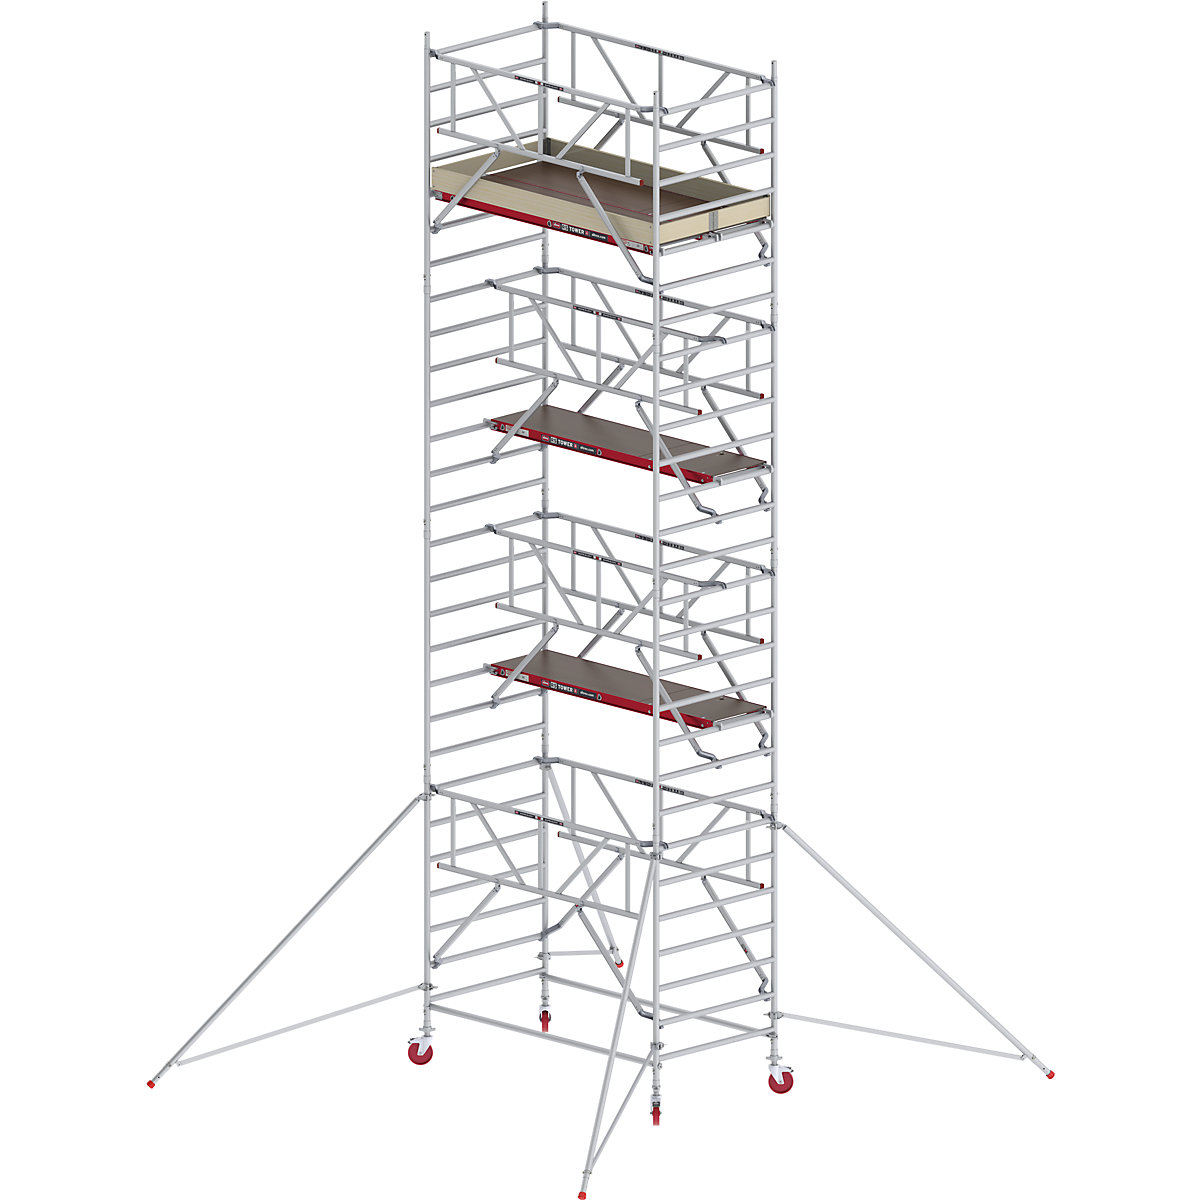 Rusztowanie ruchome RS TOWER 42, szerokie, z poręczą Safe-Quick® – Altrex, platforma drewniana, dł. 2,45 m, wys. robocza 9,20 m-7